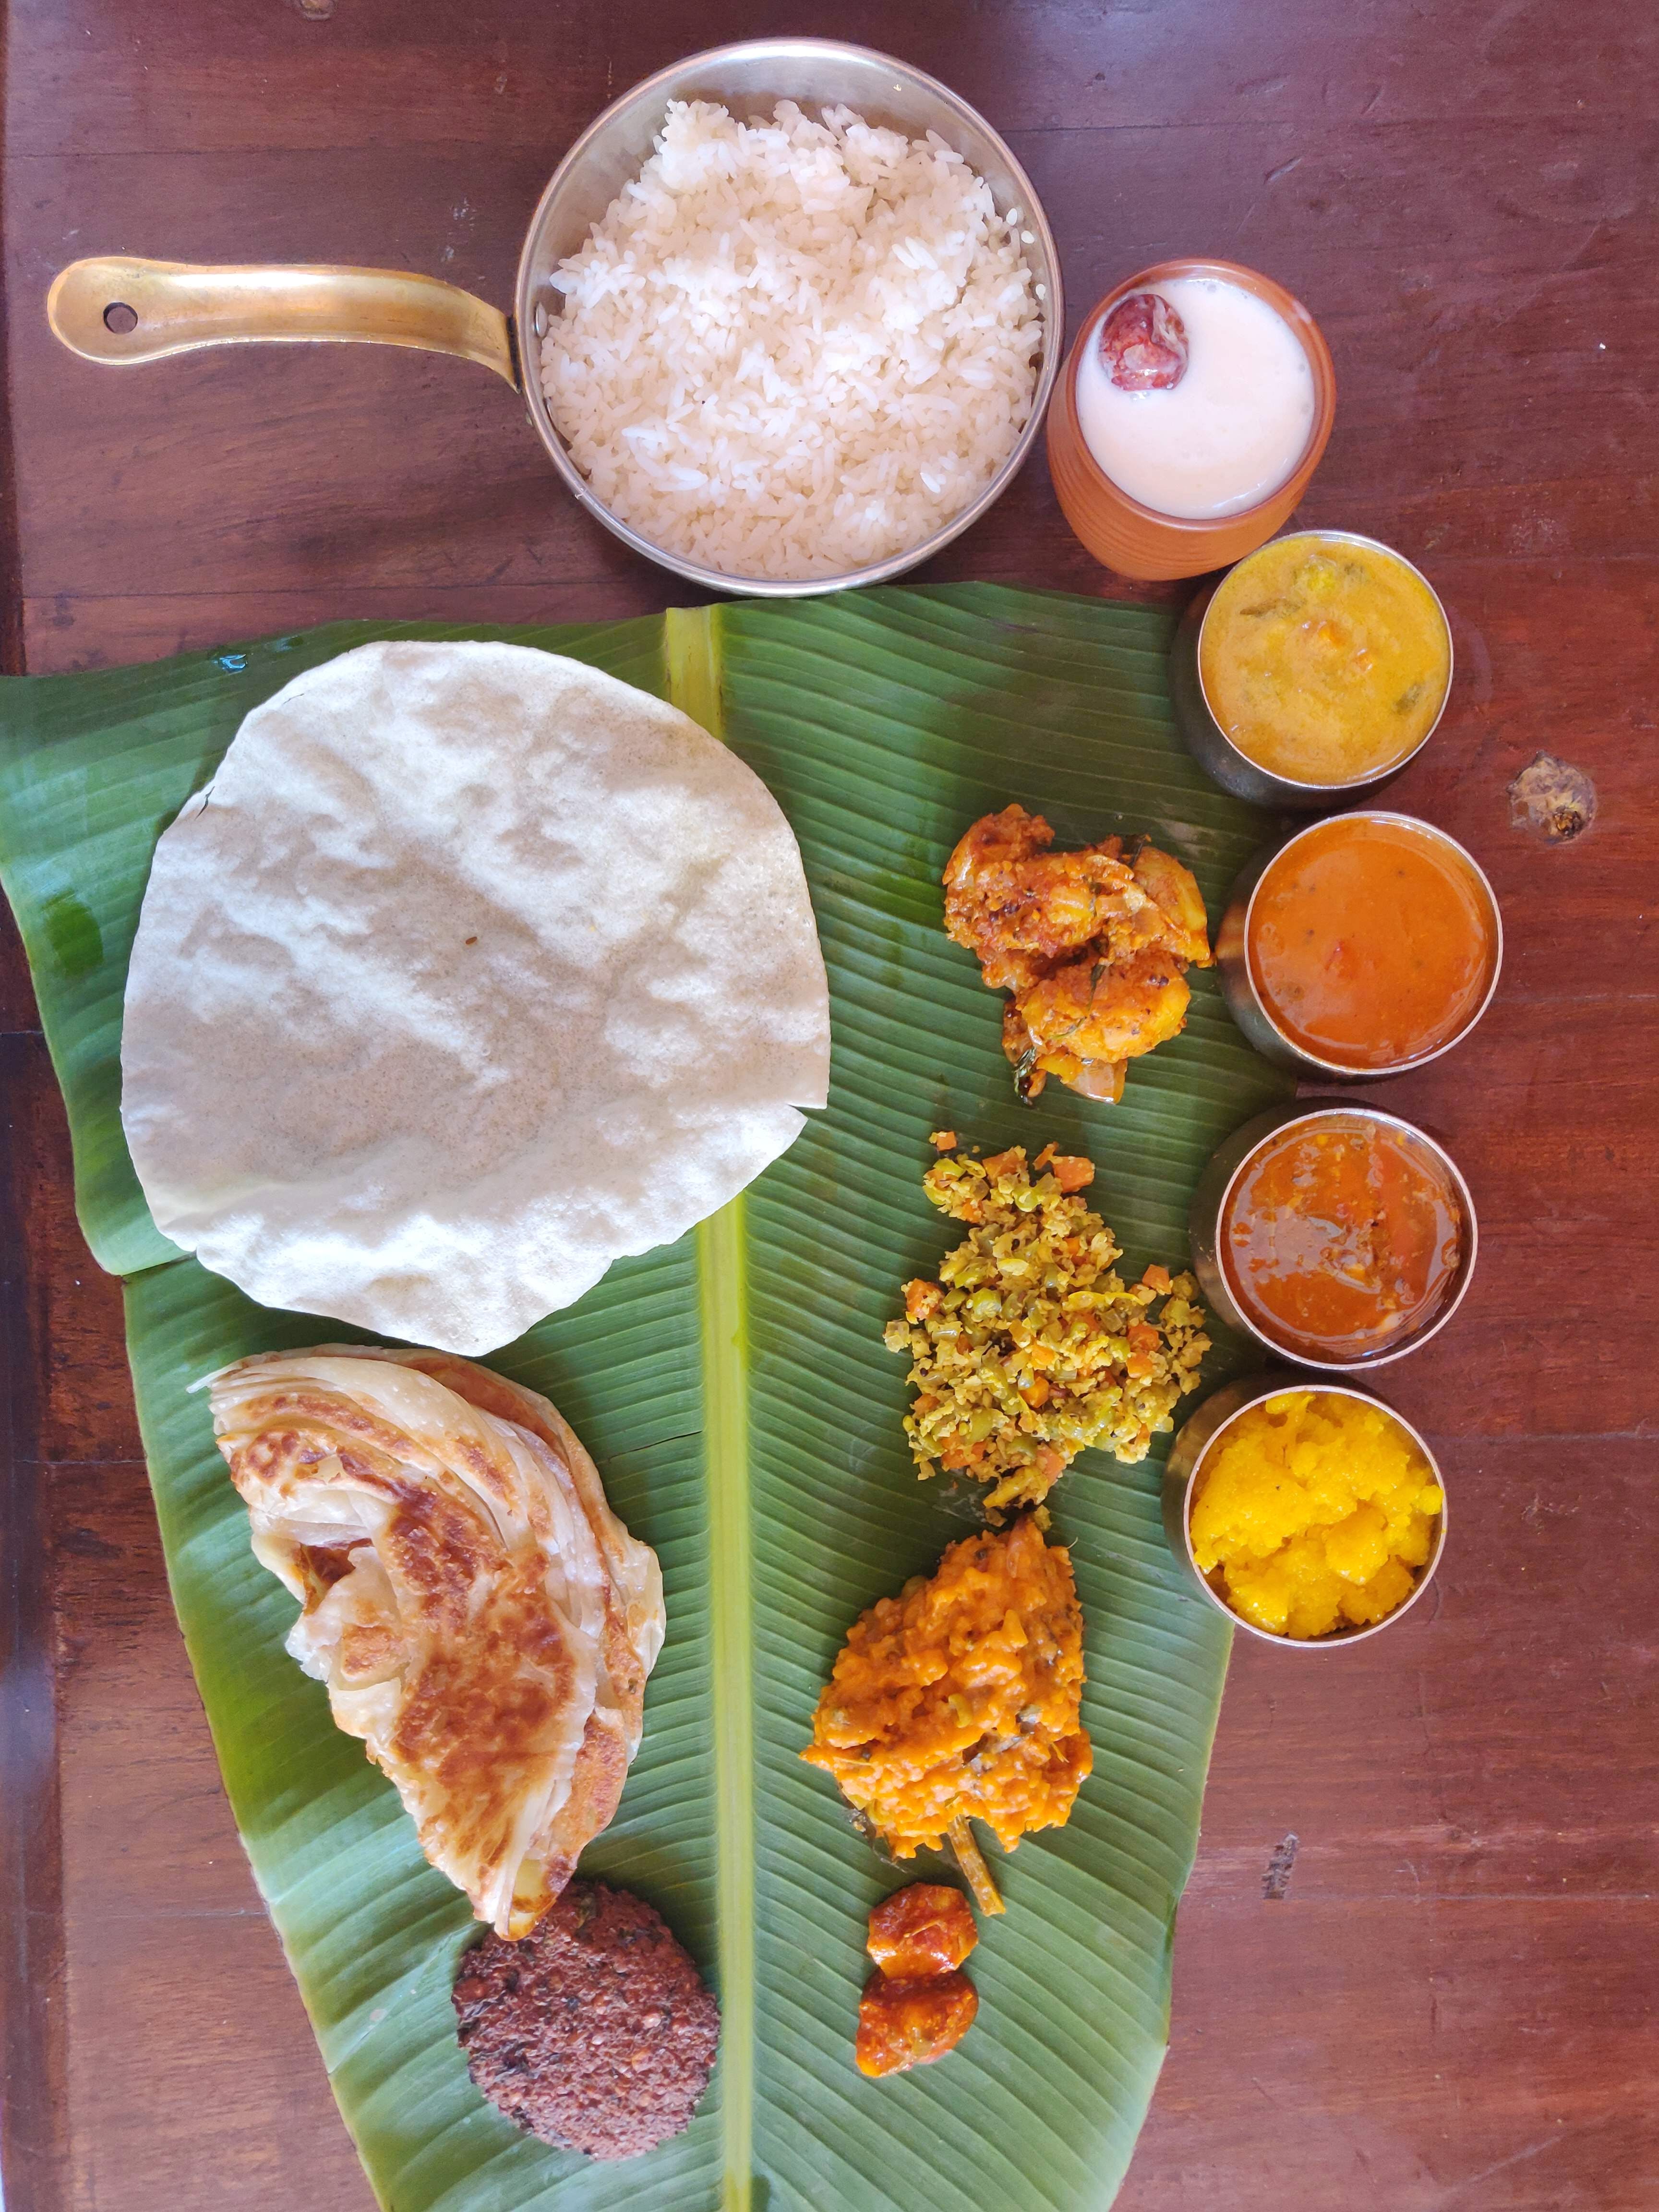 Dish,Food,Cuisine,Ingredient,Meal,Indian cuisine,Pathiri,Breakfast,Vegetarian food,Chutney